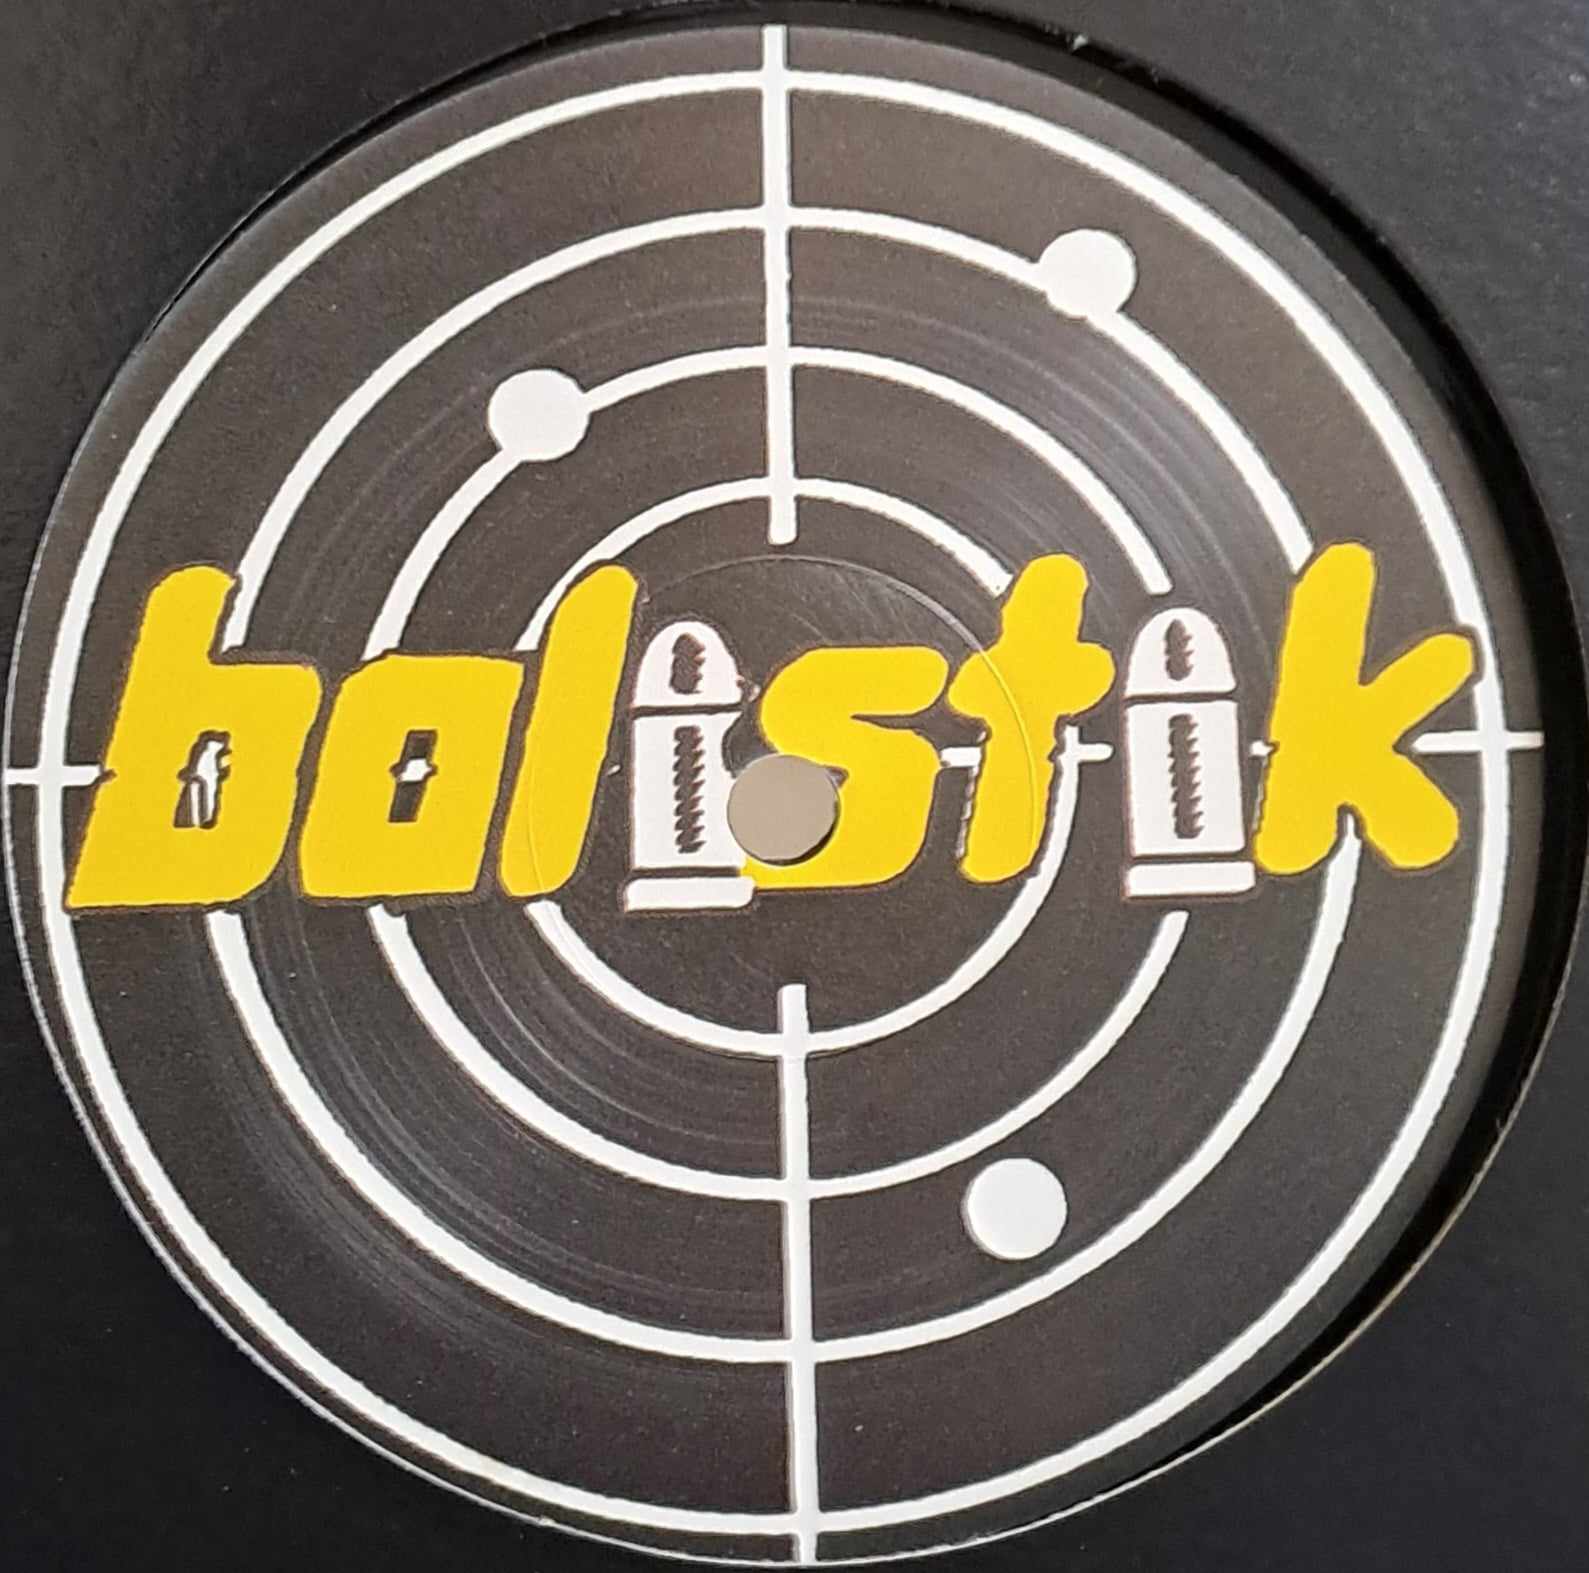 Balistik 11 (dernières copies en stock) - vinyle freetekno